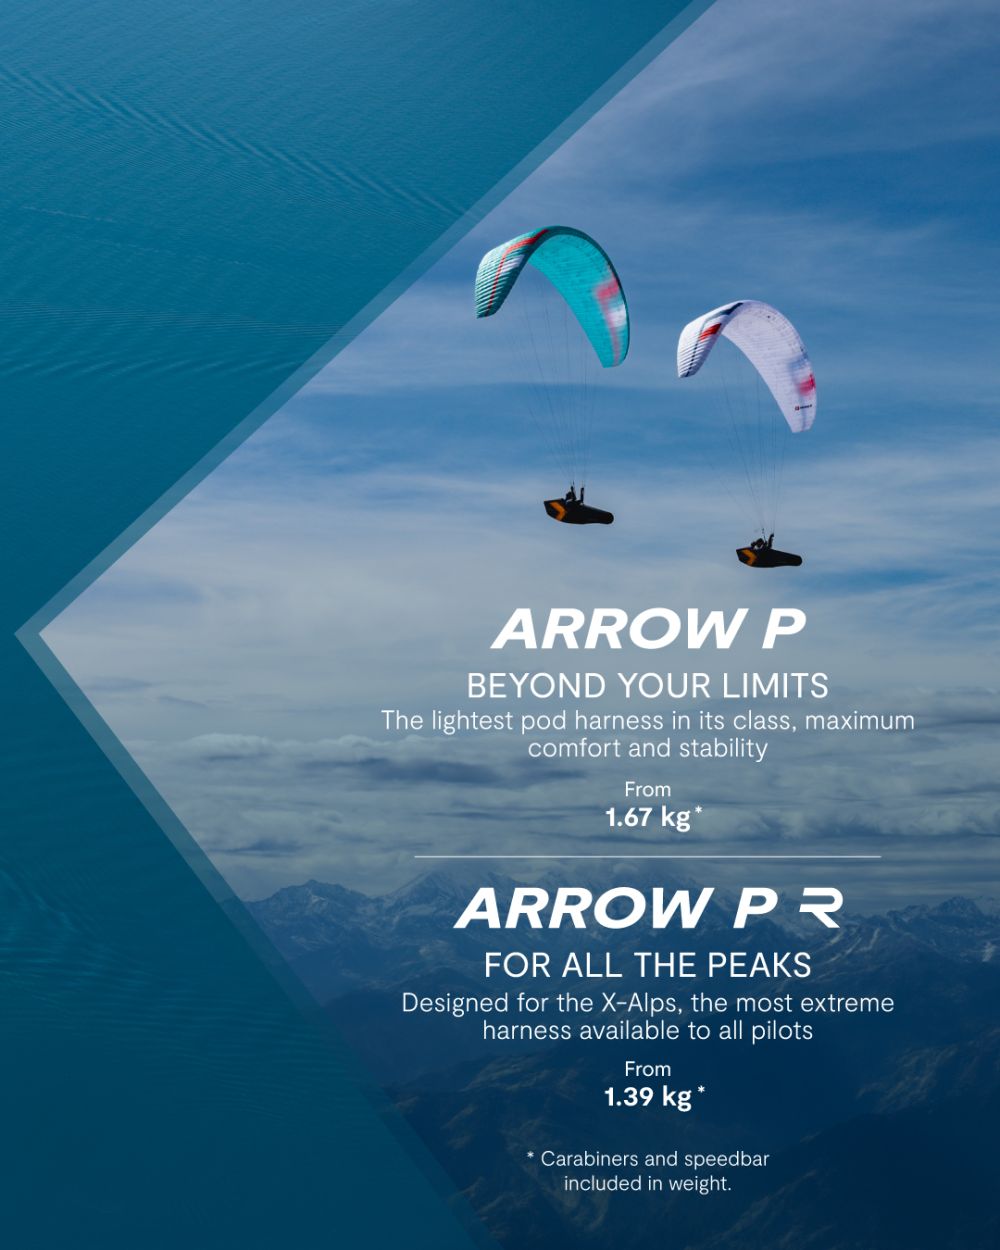 Arrow P vs Arrow P Race. Which one suits you best?